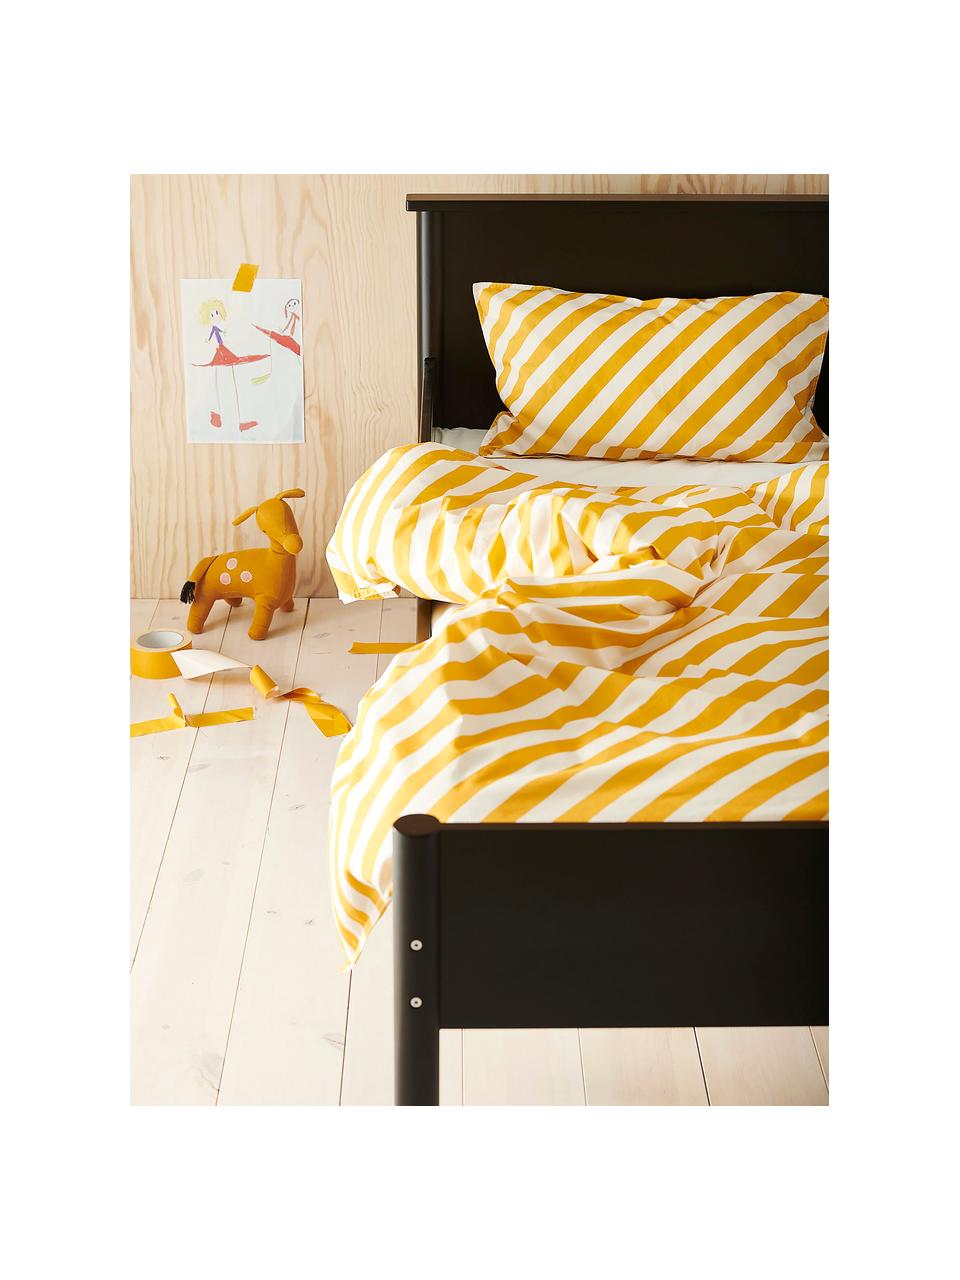 Baumwollperkal-Bettwäsche Franny Mini mit Streifen in Gelb/Weiß, Gelb, Weiß, 100 x 130 cm + 1 Kissen 55 x 35 cm